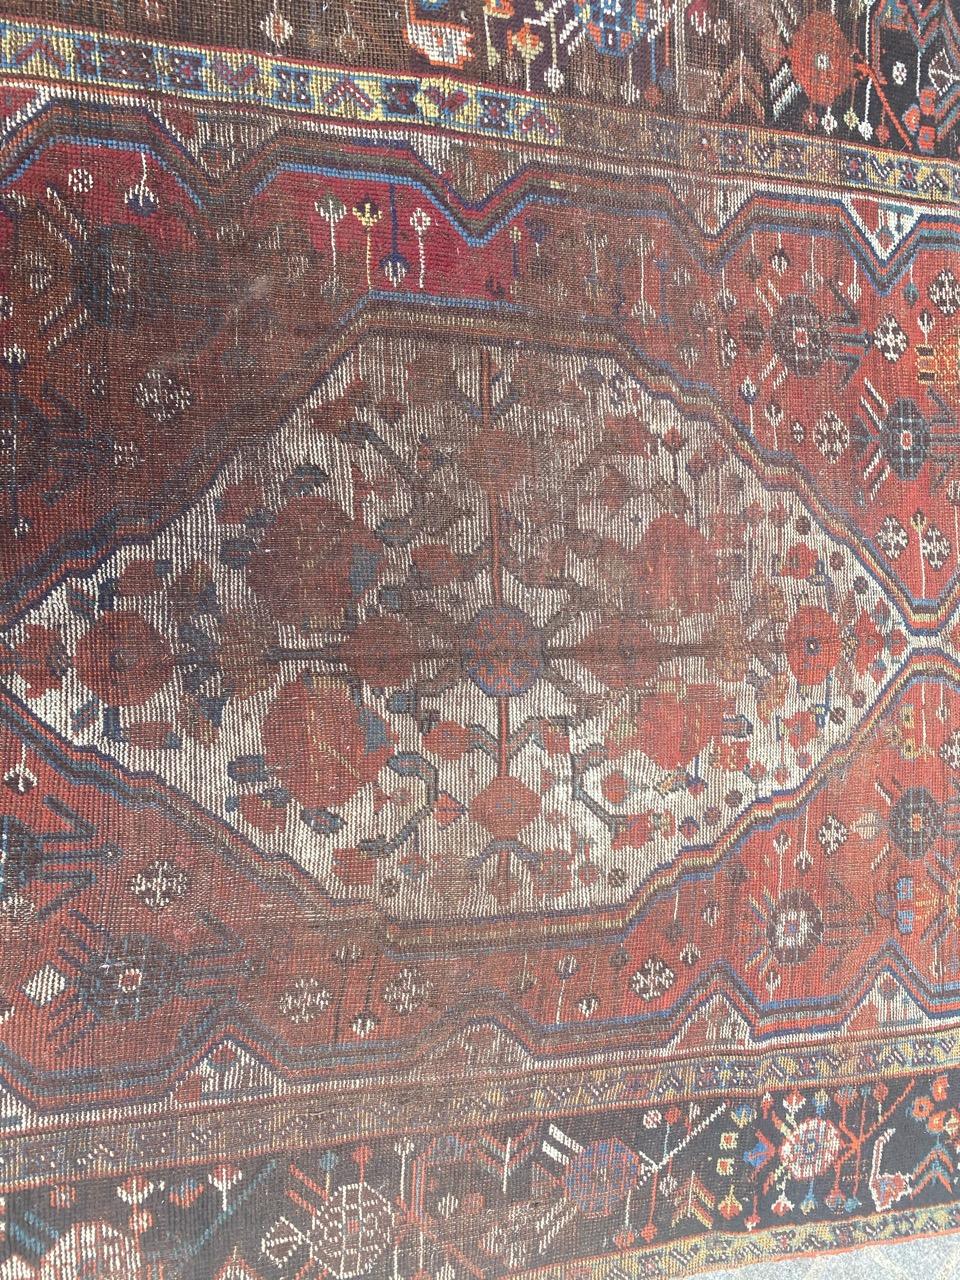 Joli tapis Shiraz ghashghai du 19ème siècle avec de beaux motifs géométriques et tribaux et de belles couleurs, entièrement noué à la main avec du velours de laine sur une base de laine.

✨✨✨
